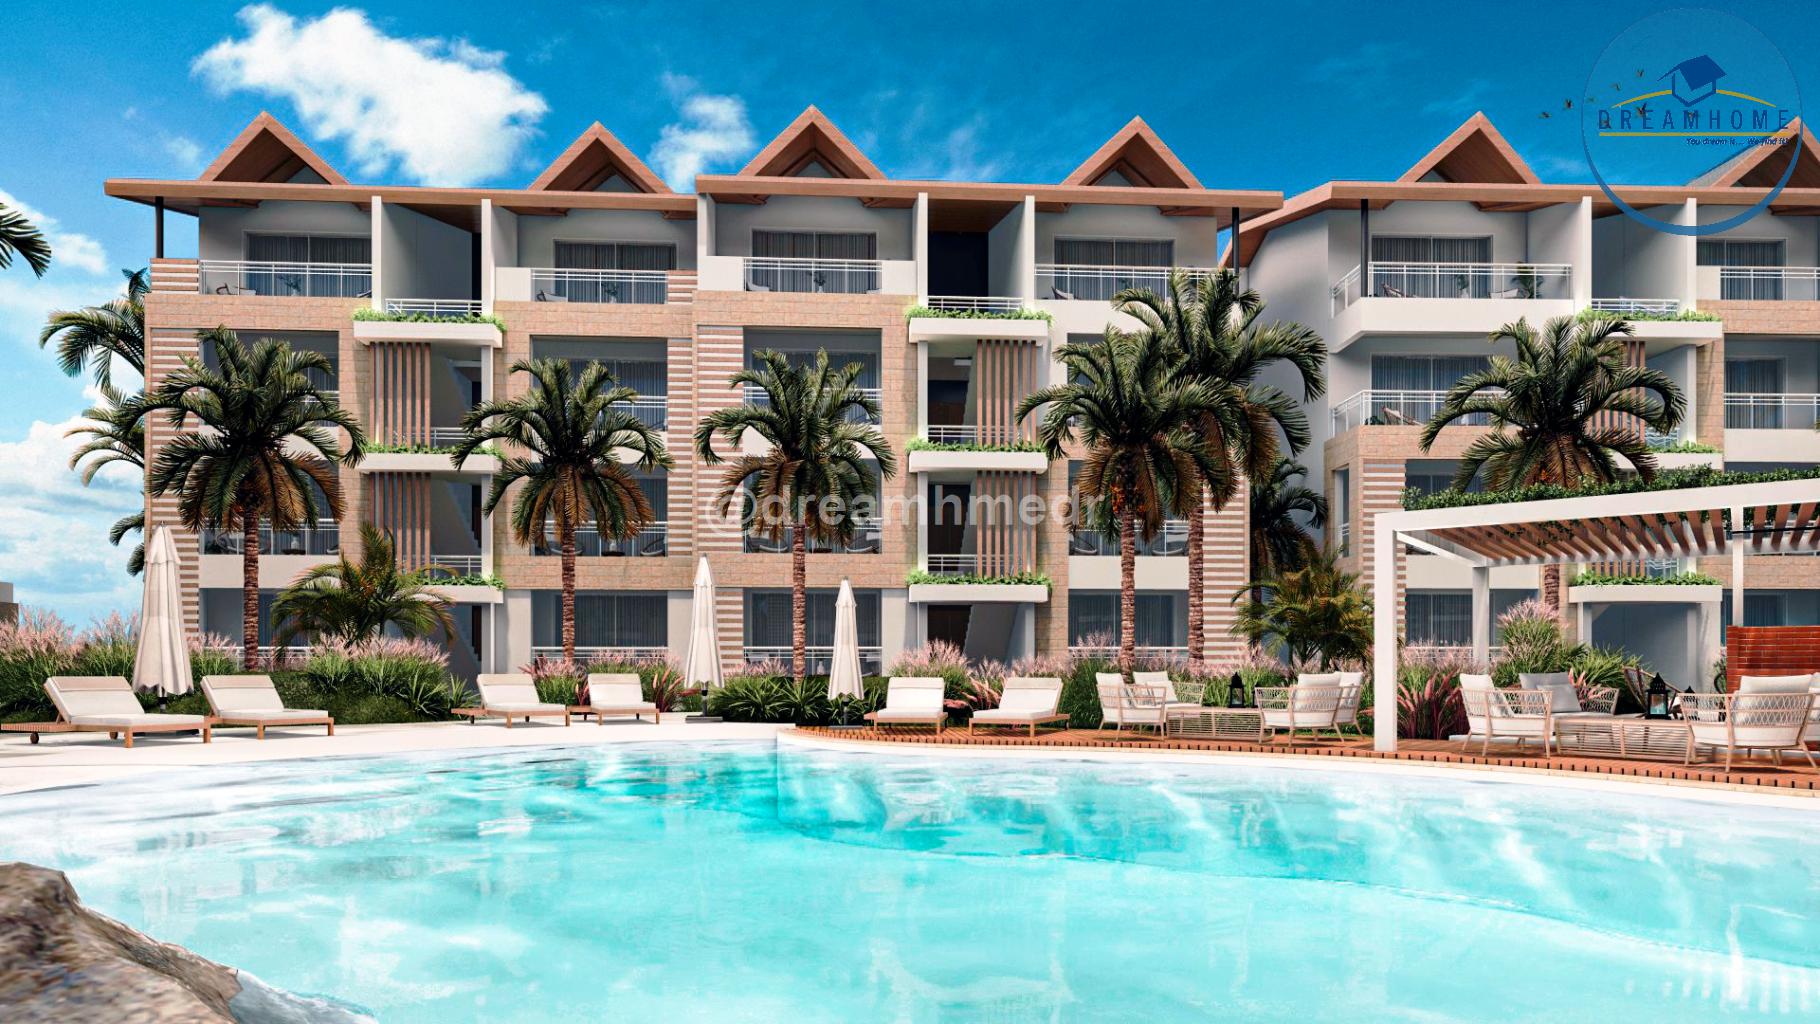 apartamentos - Exclusivos Apartamentos de Lujo en Venta en Bayahibe, Dominicus ID 3336 4